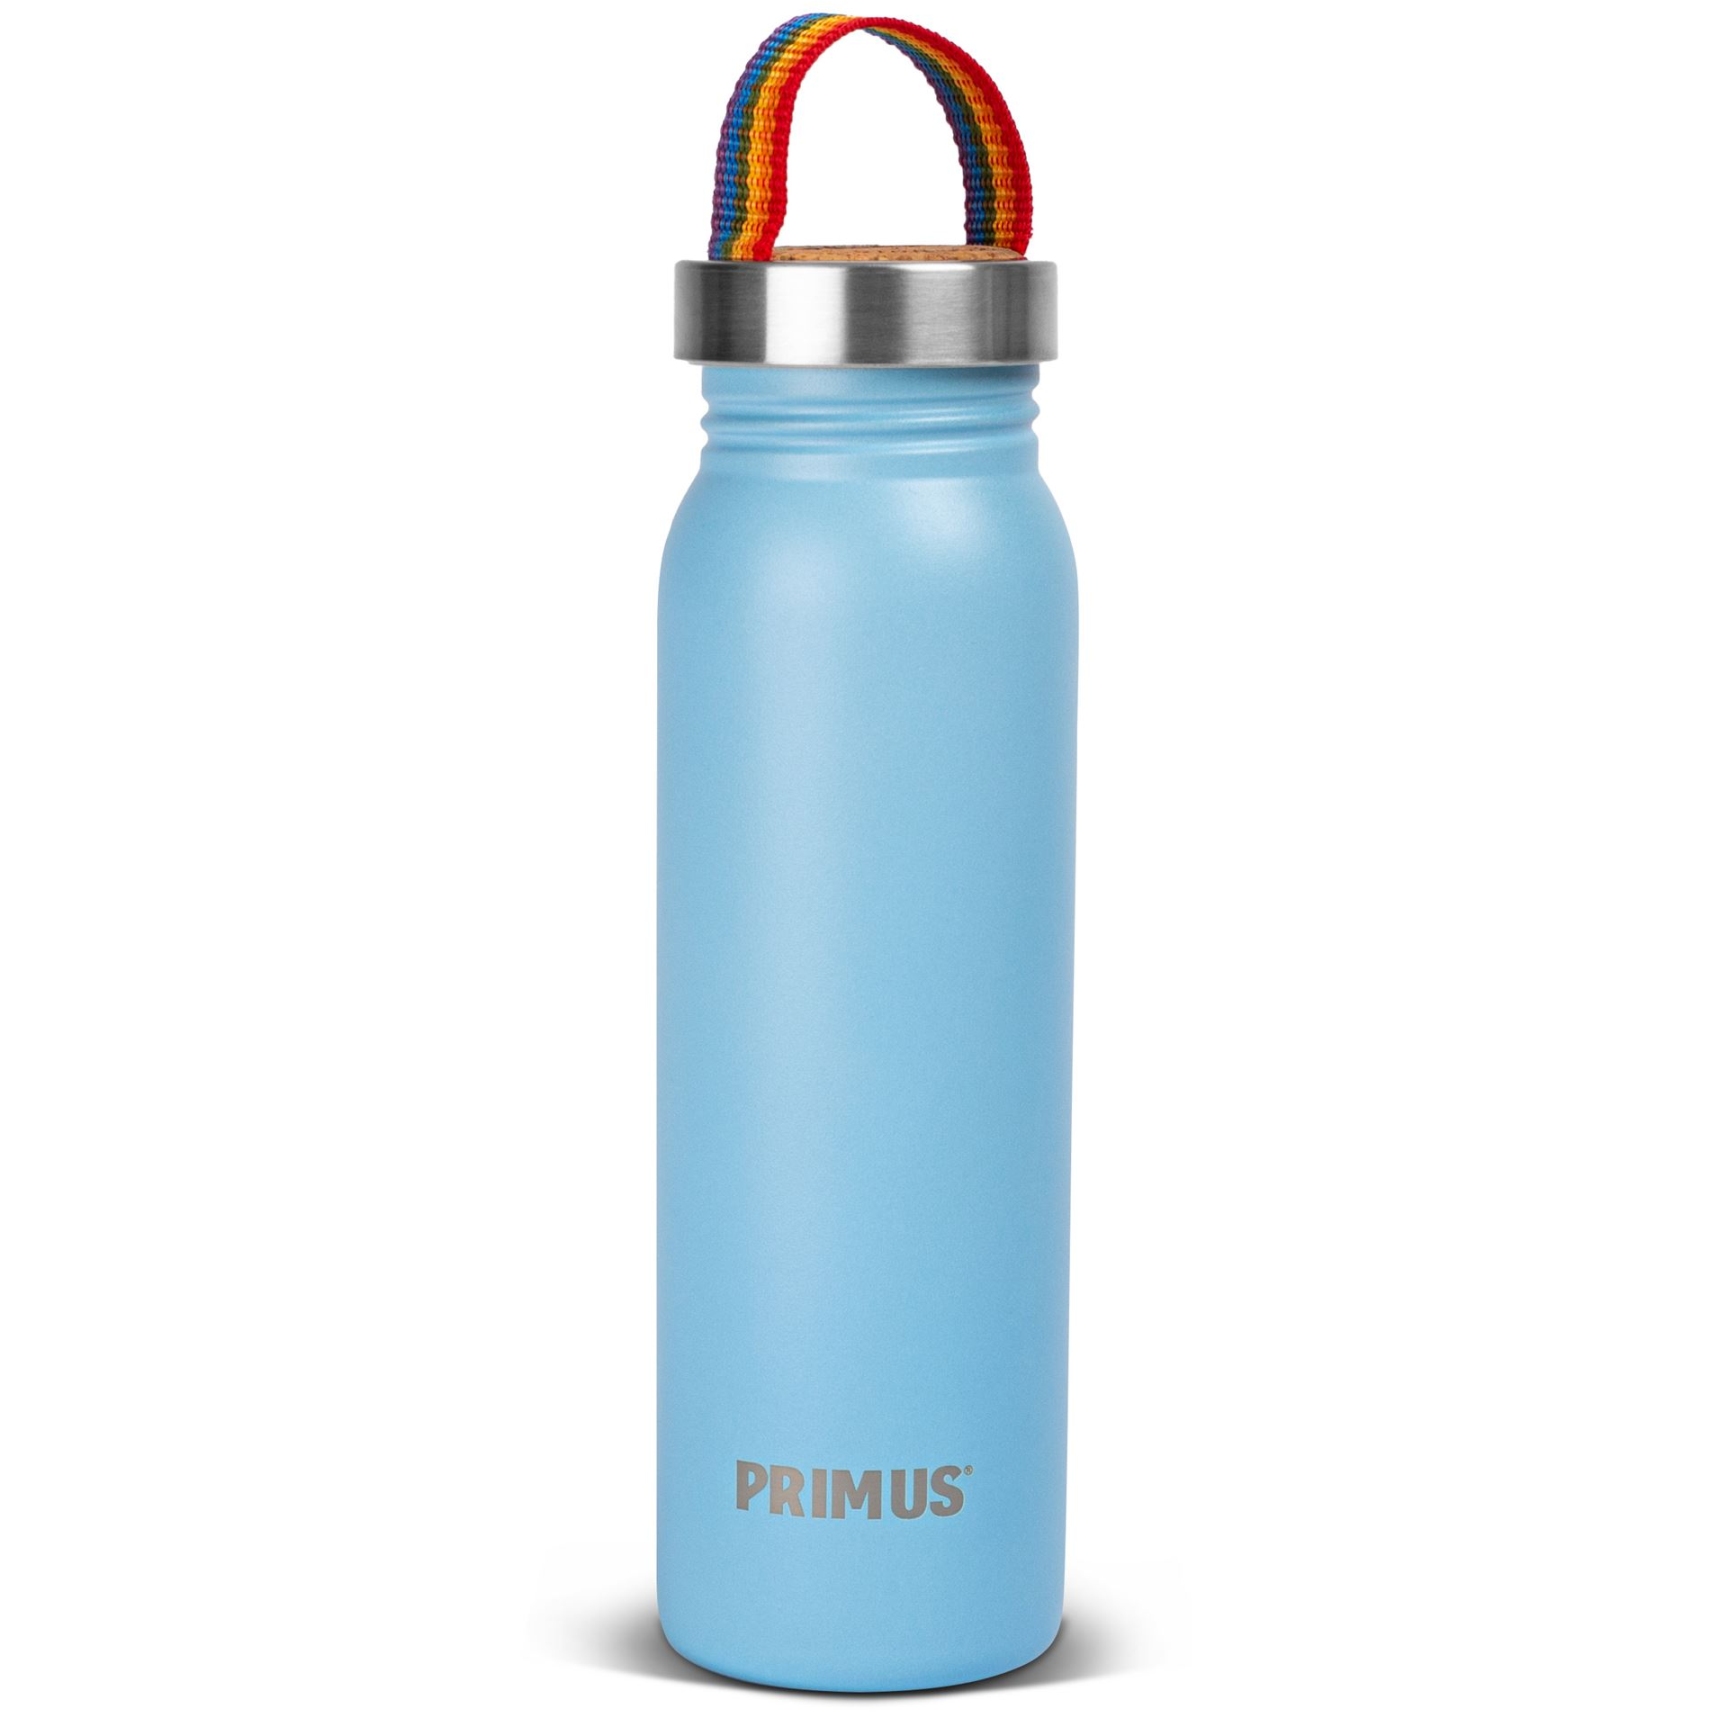 Produktbild von Primus Klunken Trinkflasche 0.7 L - rainbow blue